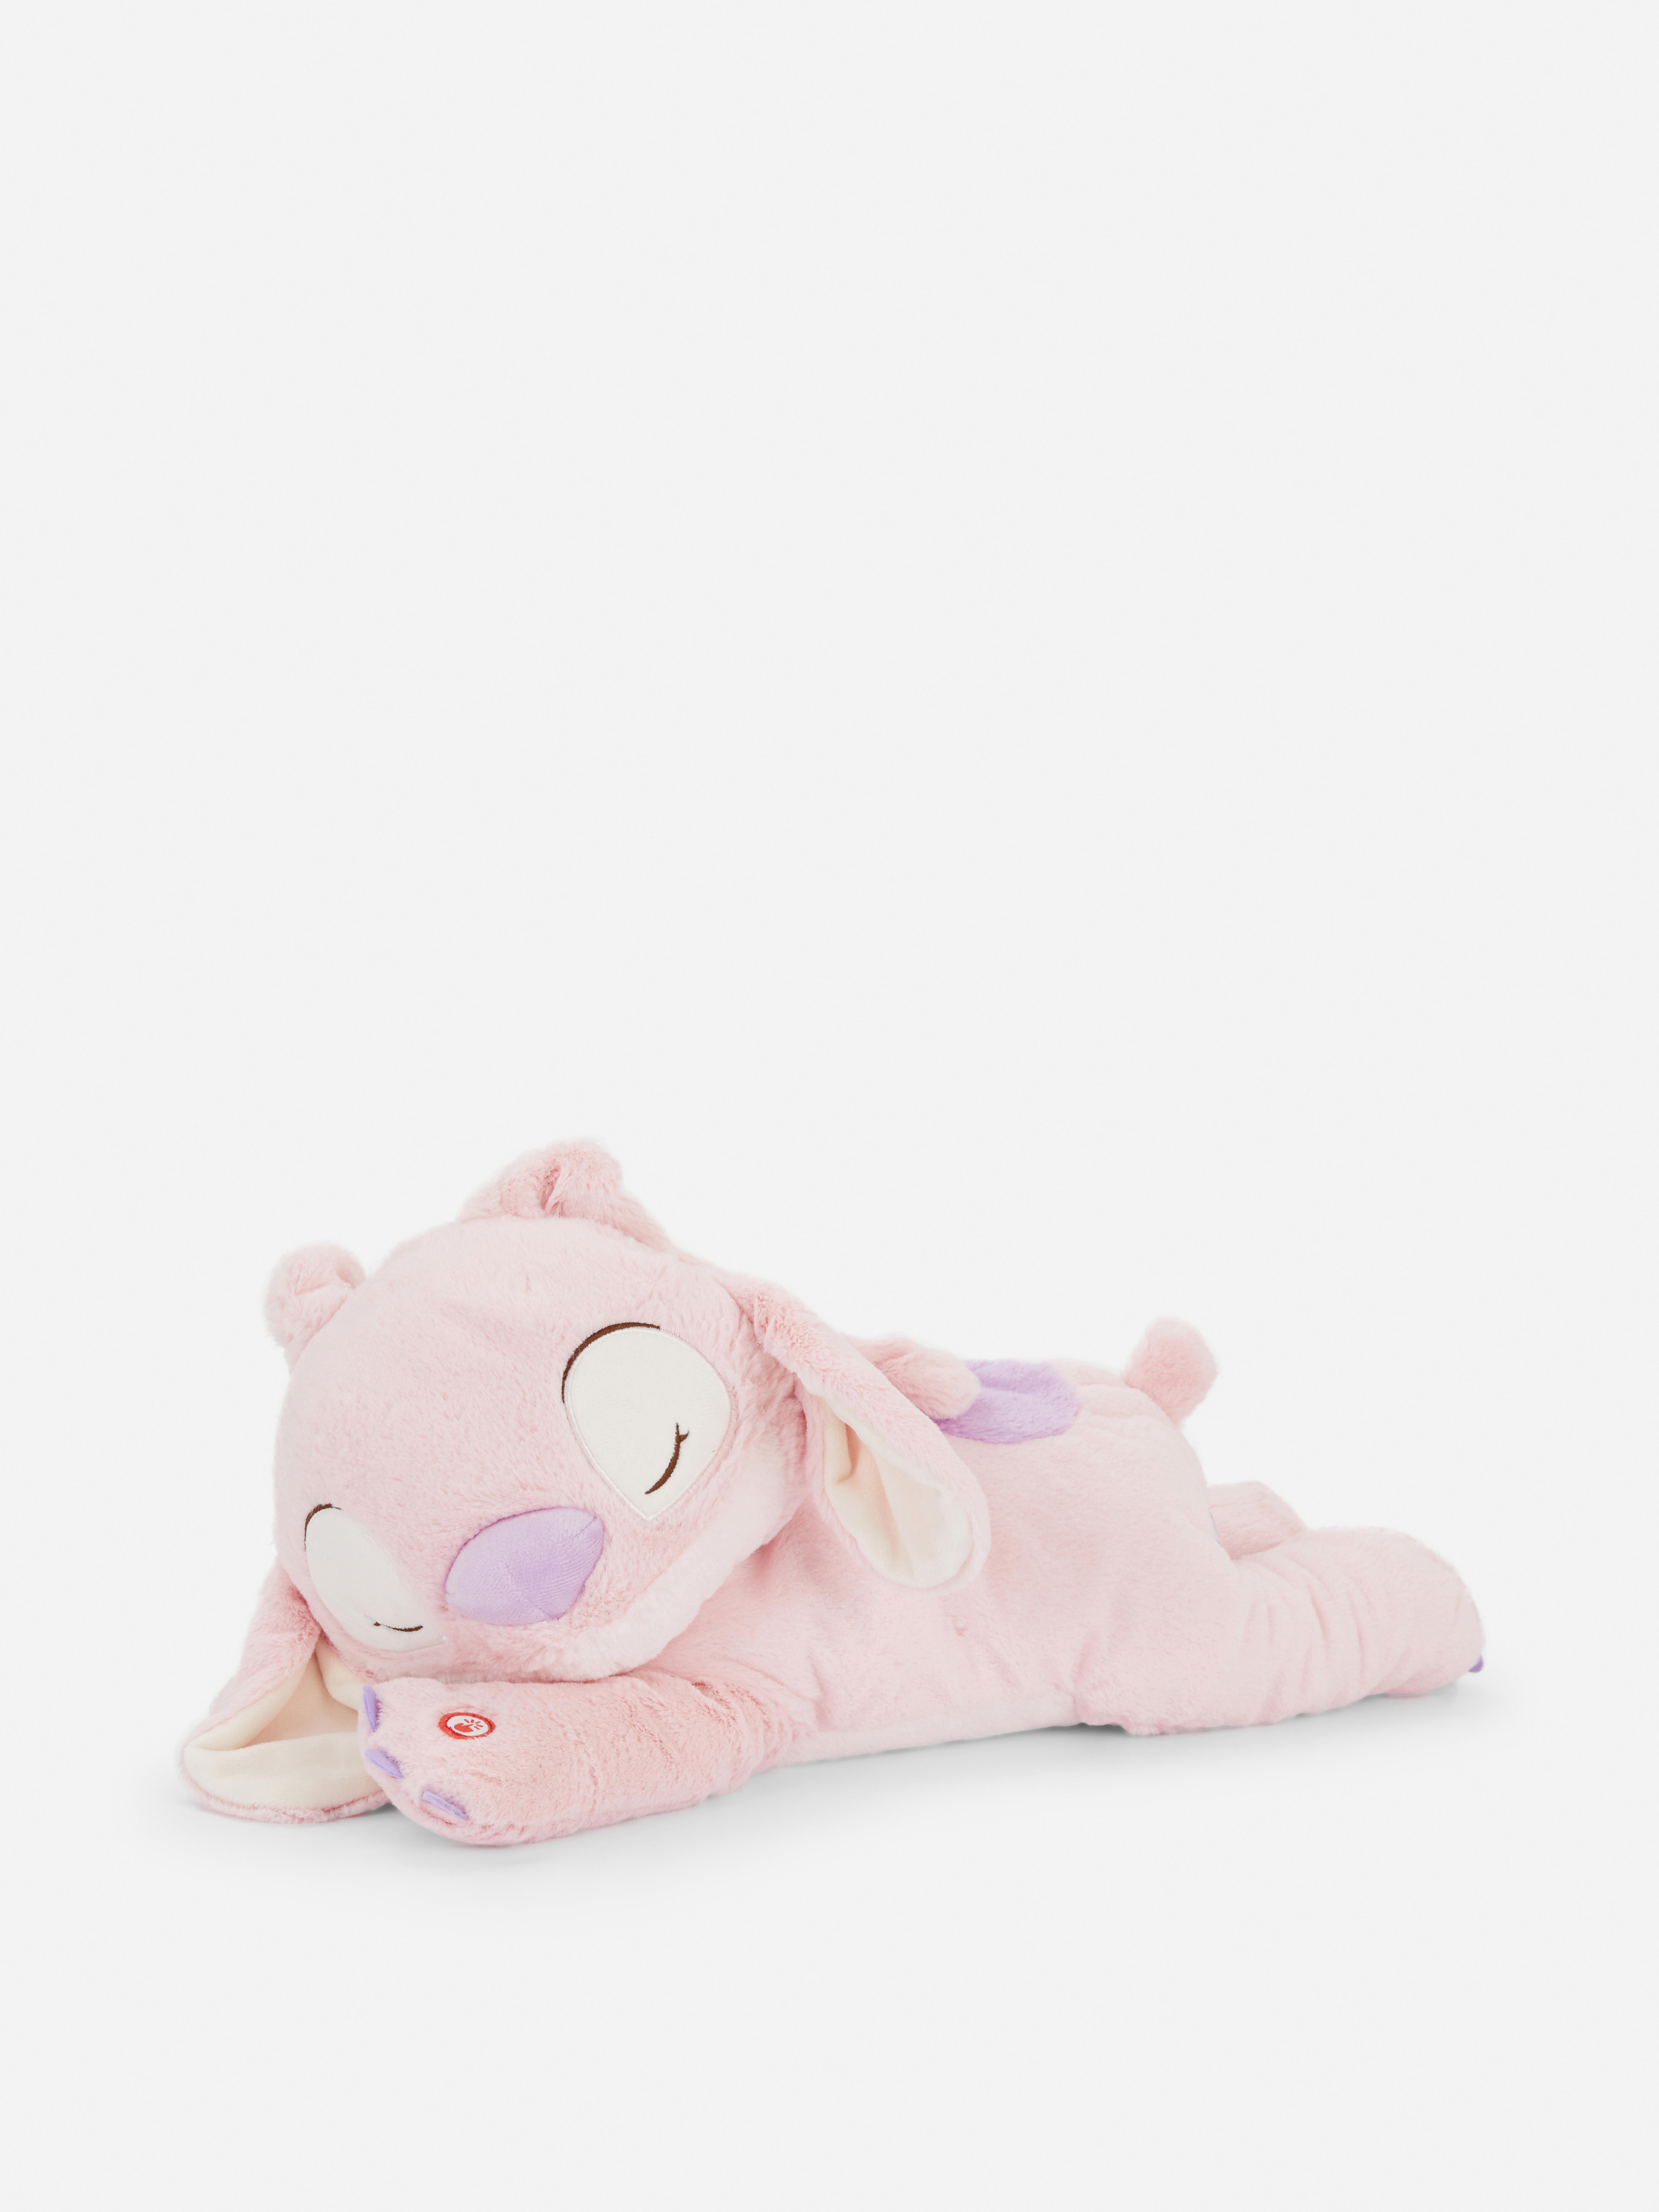 Disney’s Lilo & Stitch Sleepy Angel Plush Toy